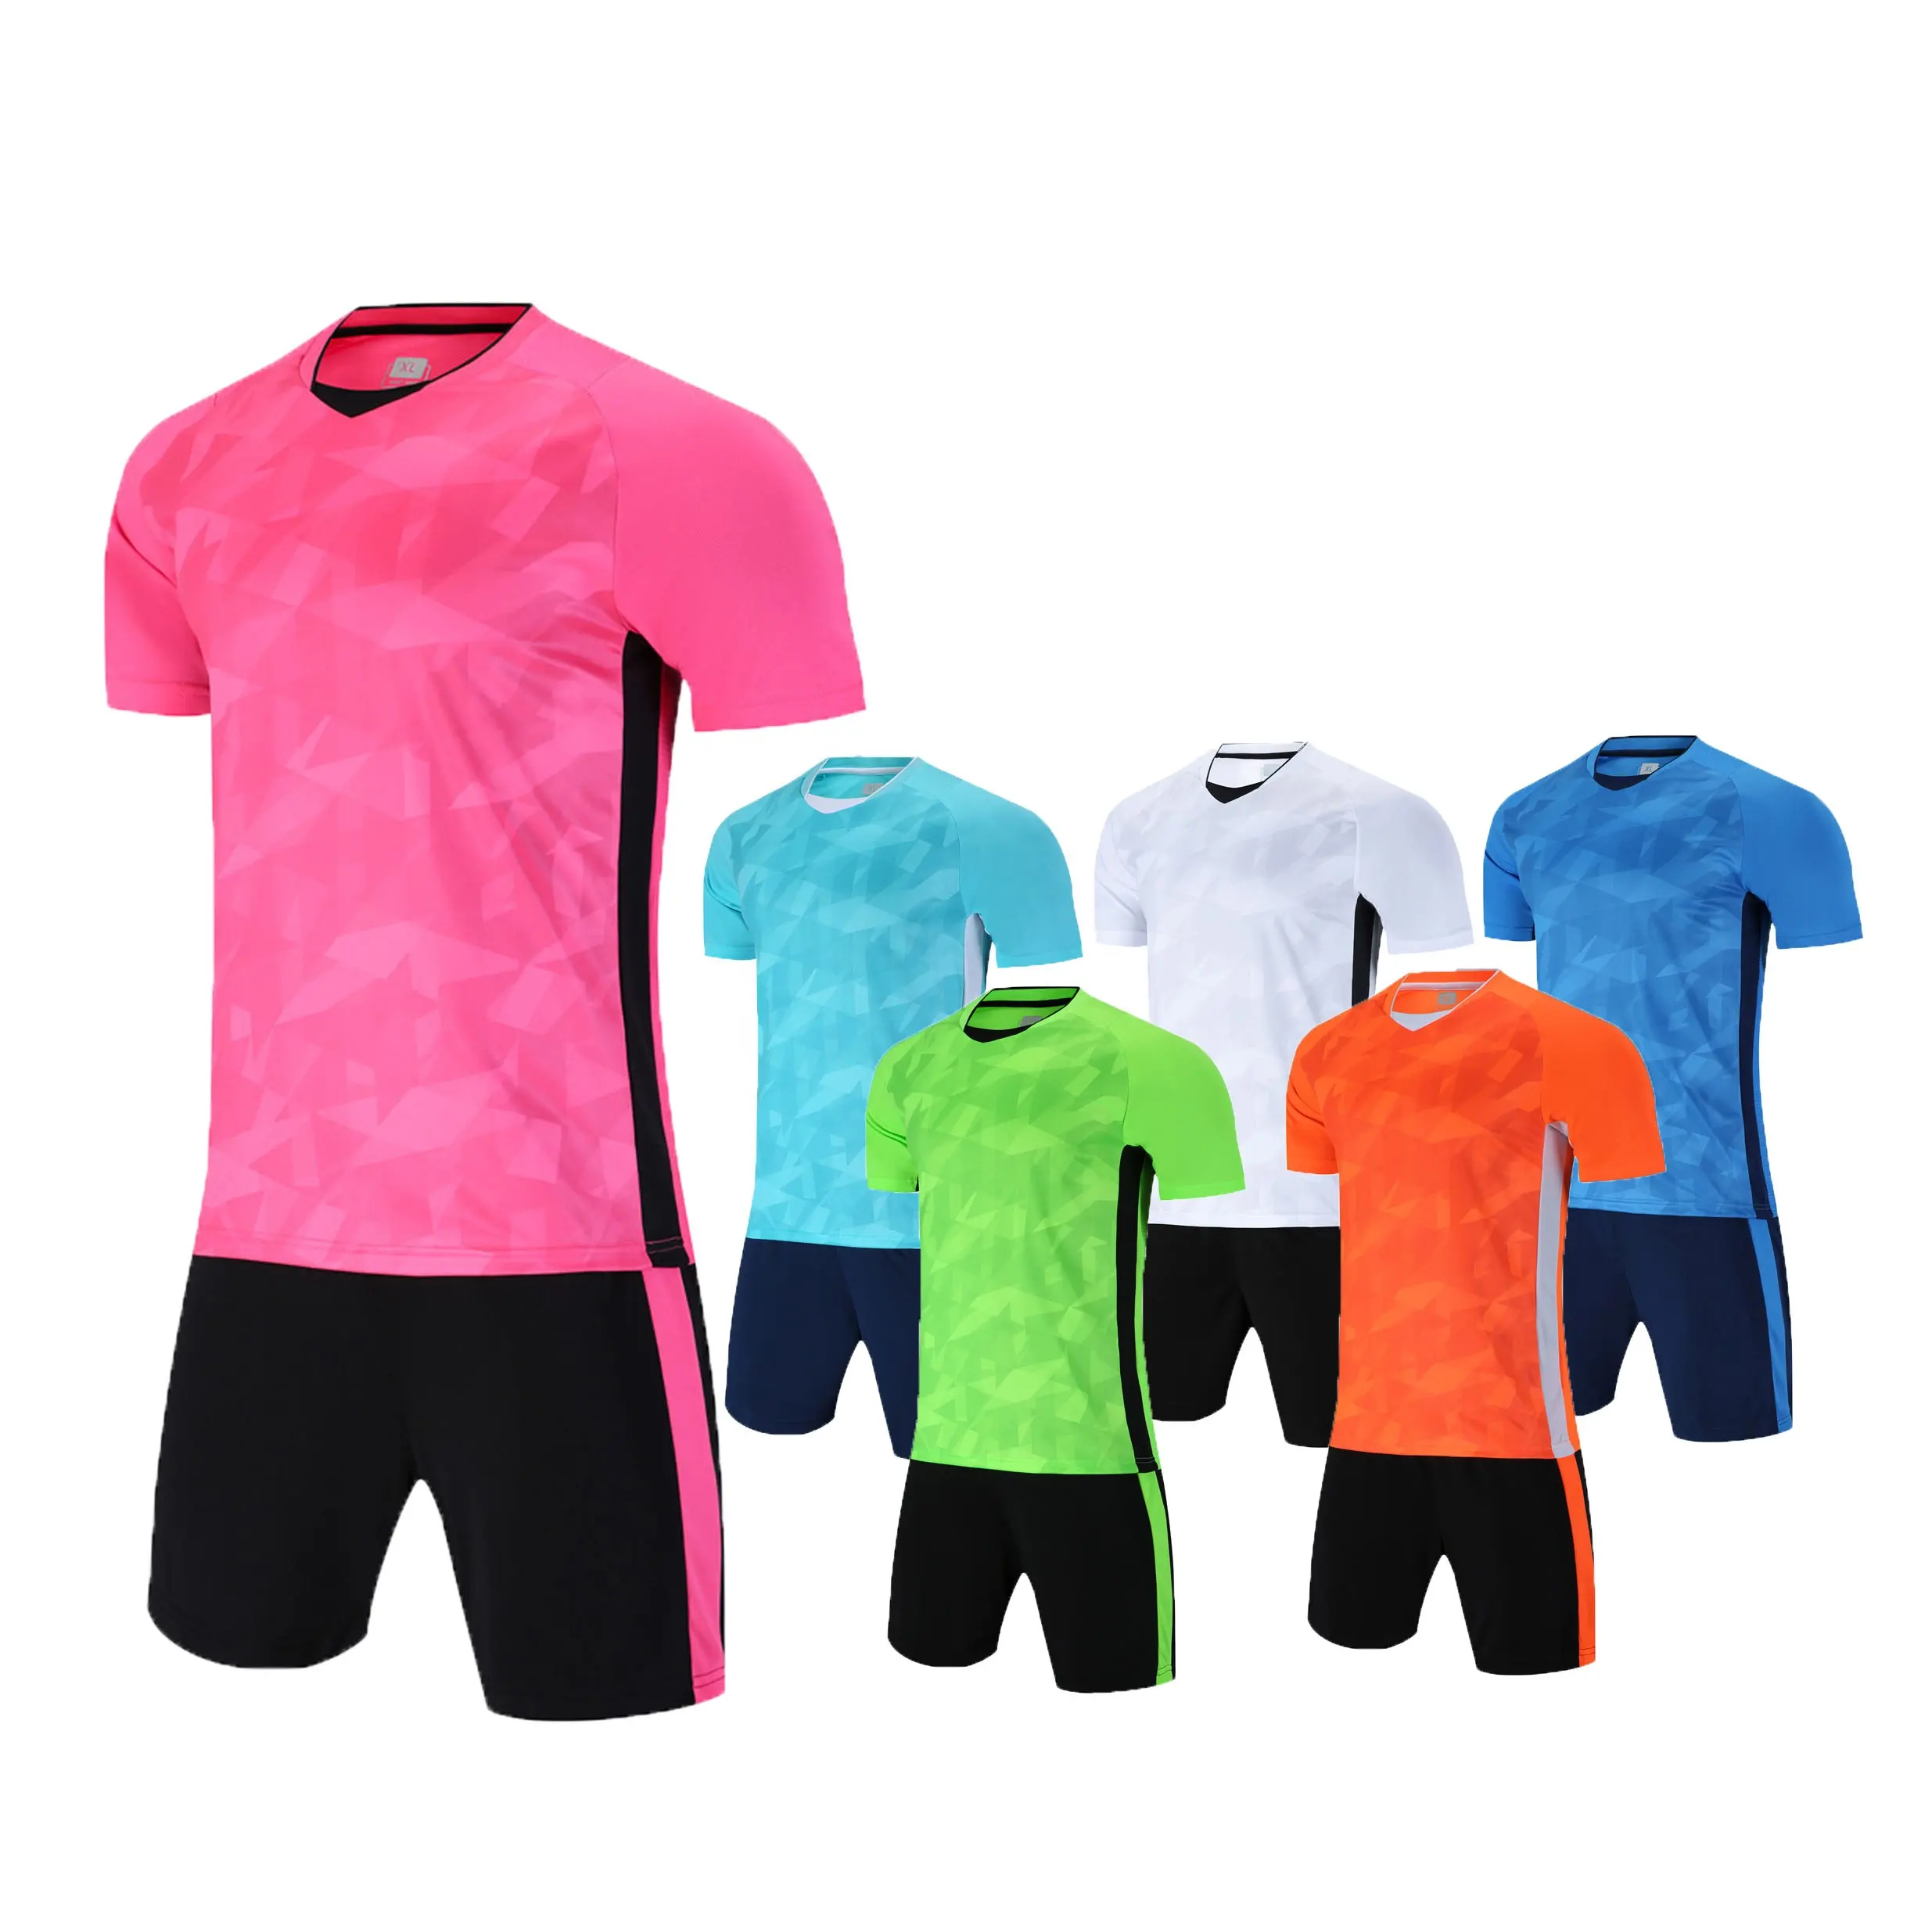 Barato al por mayor 100% poliéster jersey de fútbol nuevo modelo rosa uniformes de fútbol